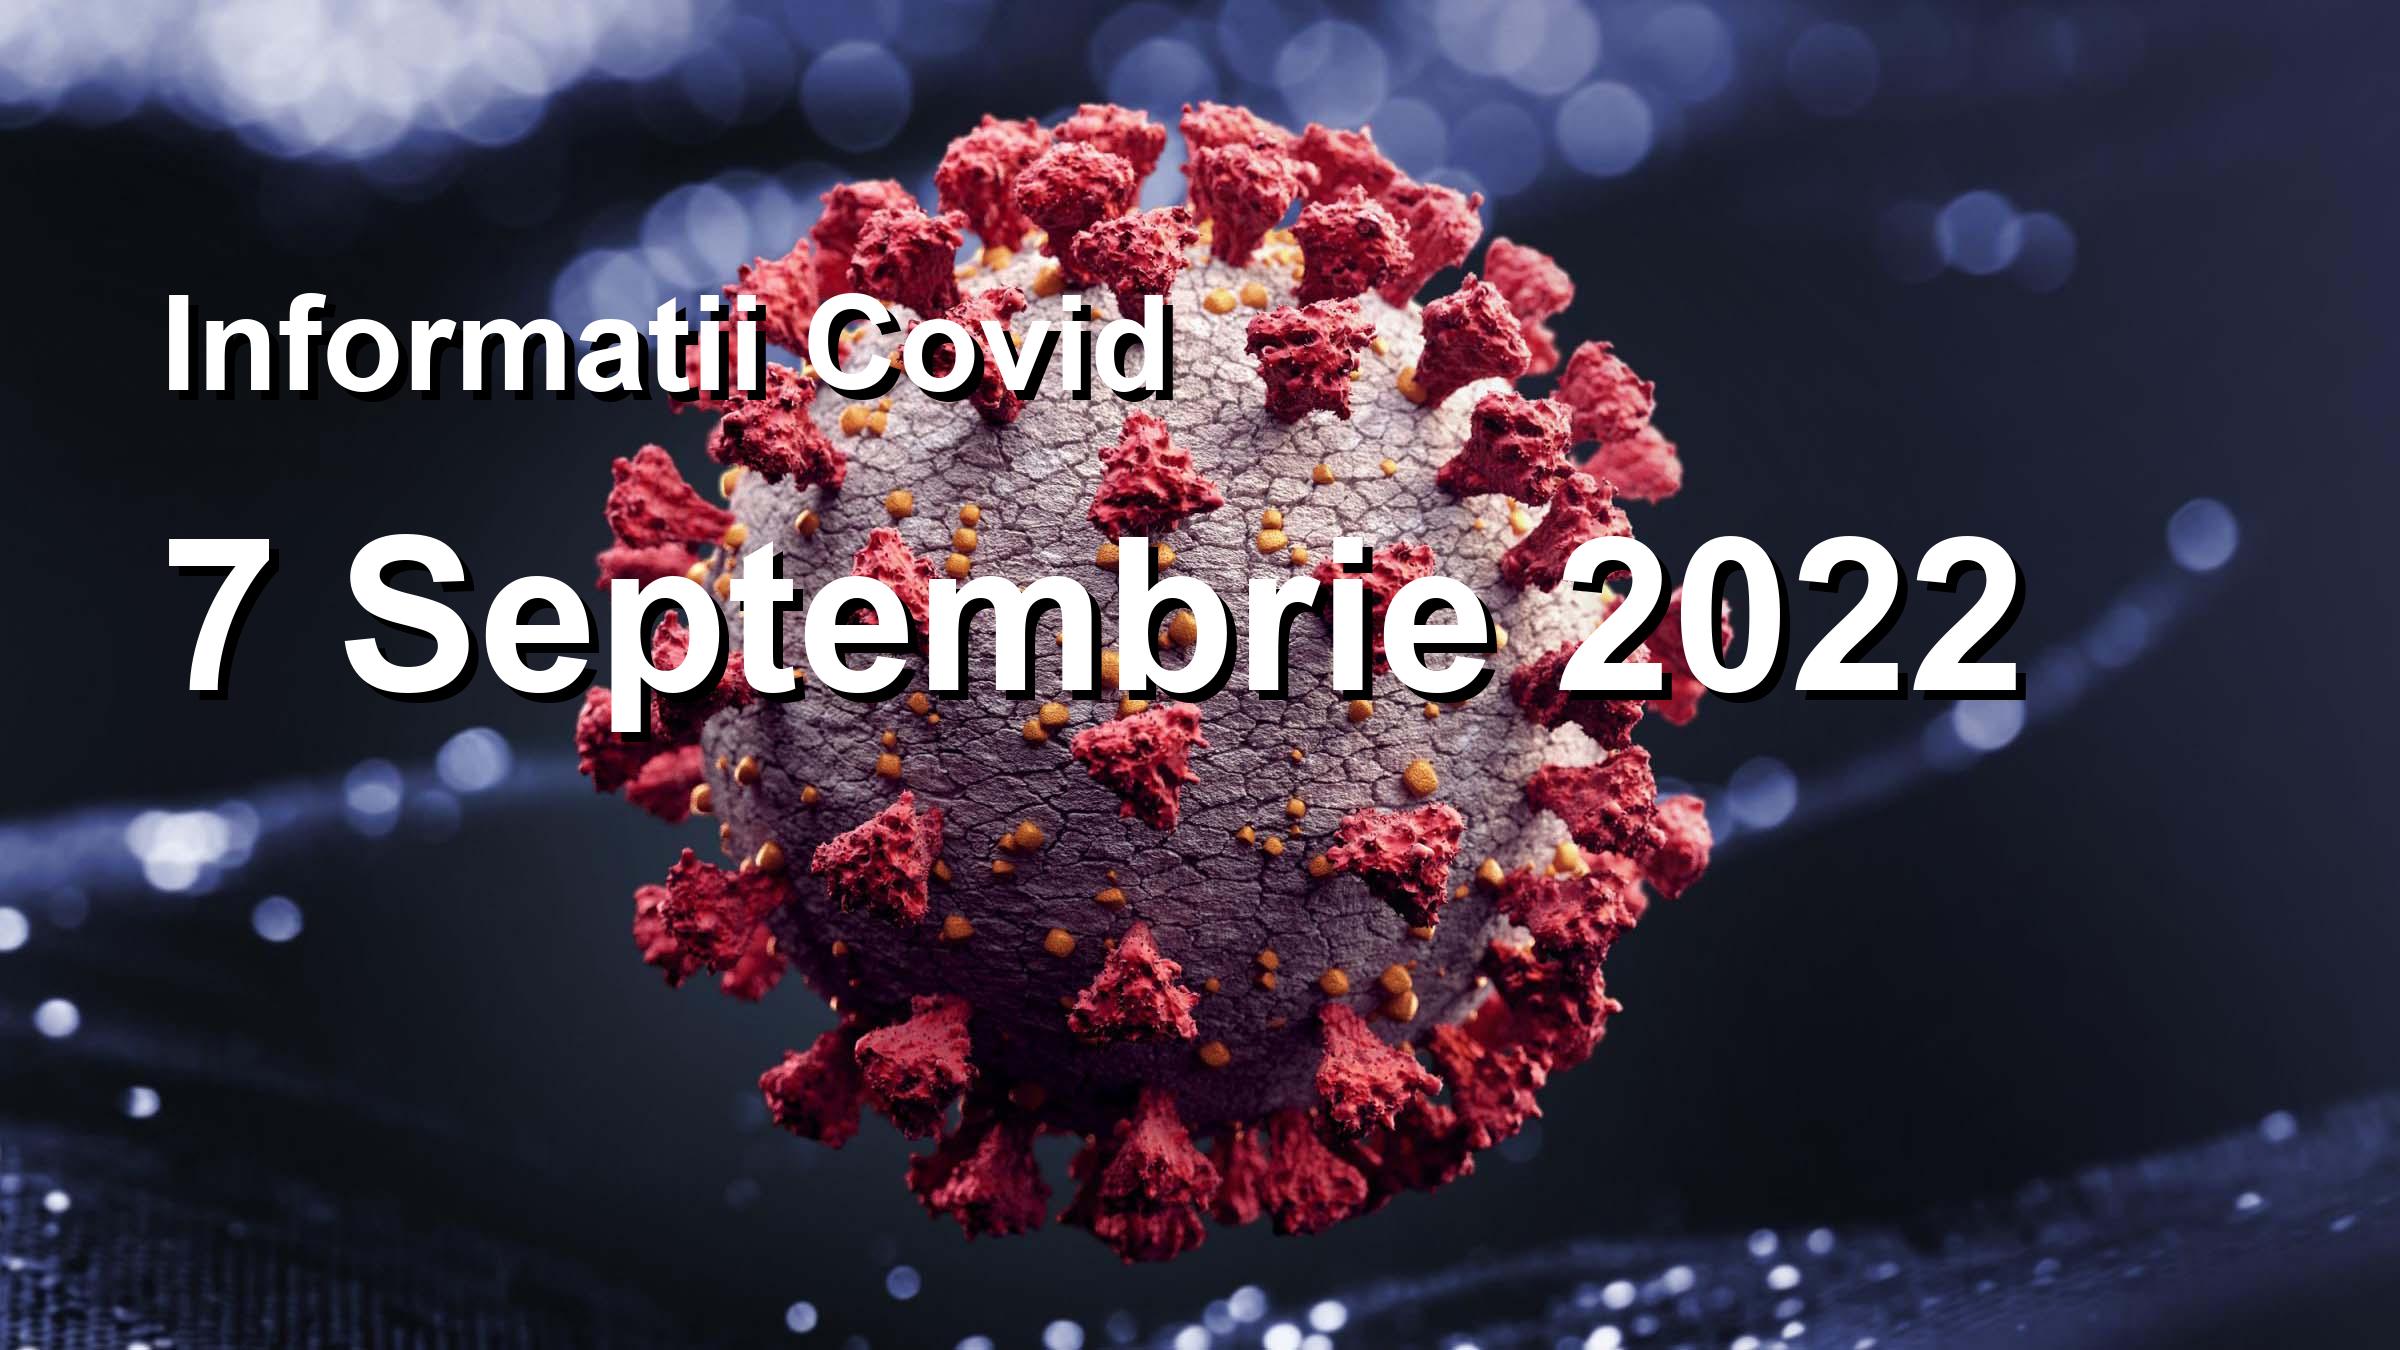 Informatii Covid-19 pentru 7 Septembrie 2022: 2227 infectari, 17672 teste. | Coronavirus Romania